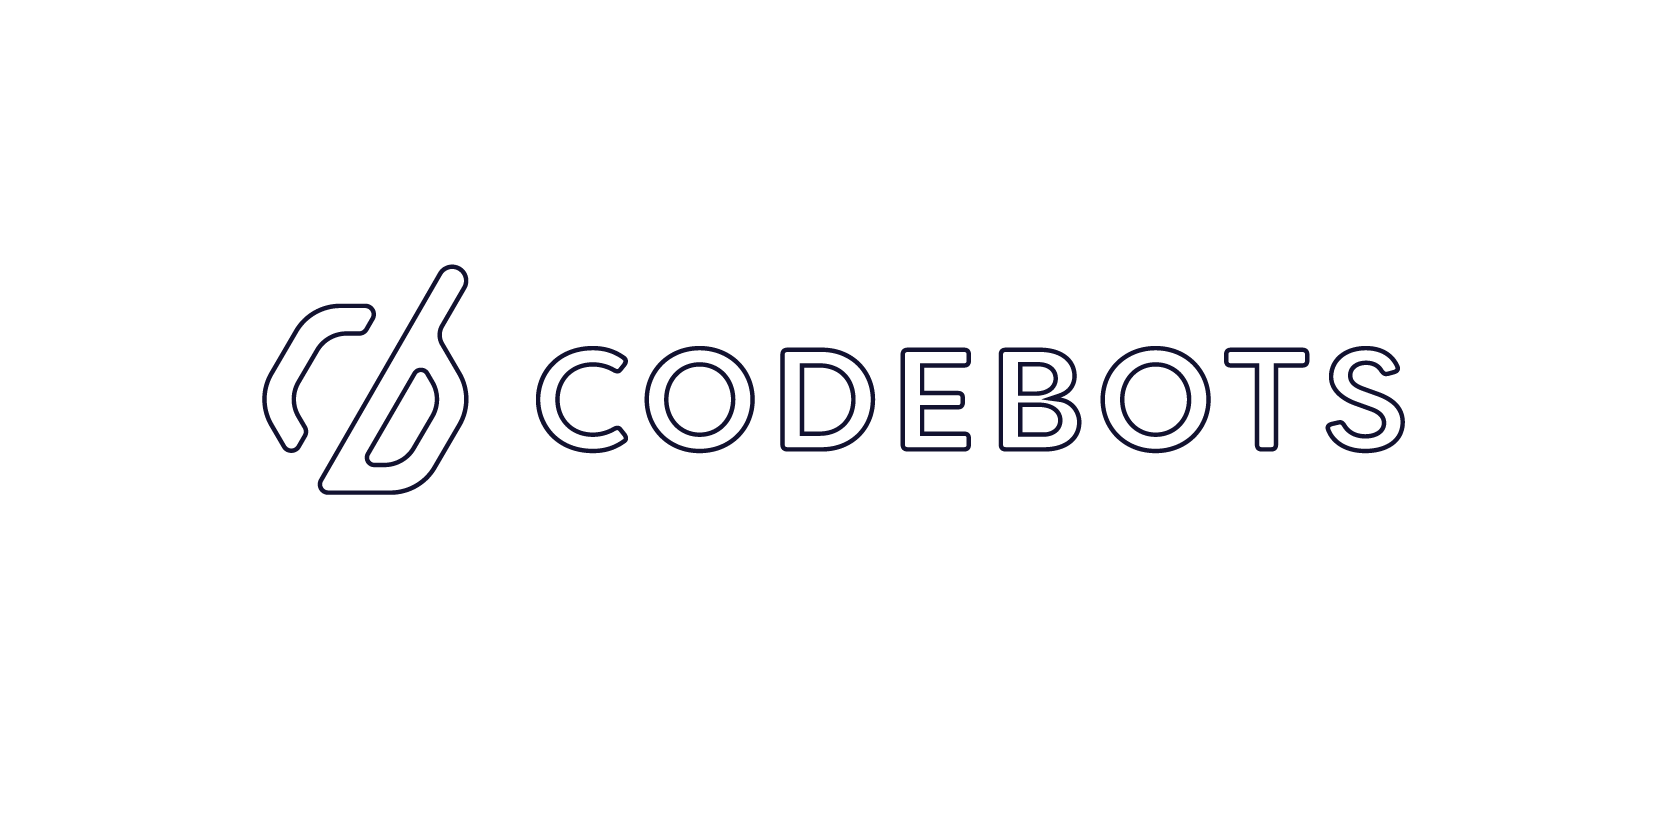 Codebots outline logo